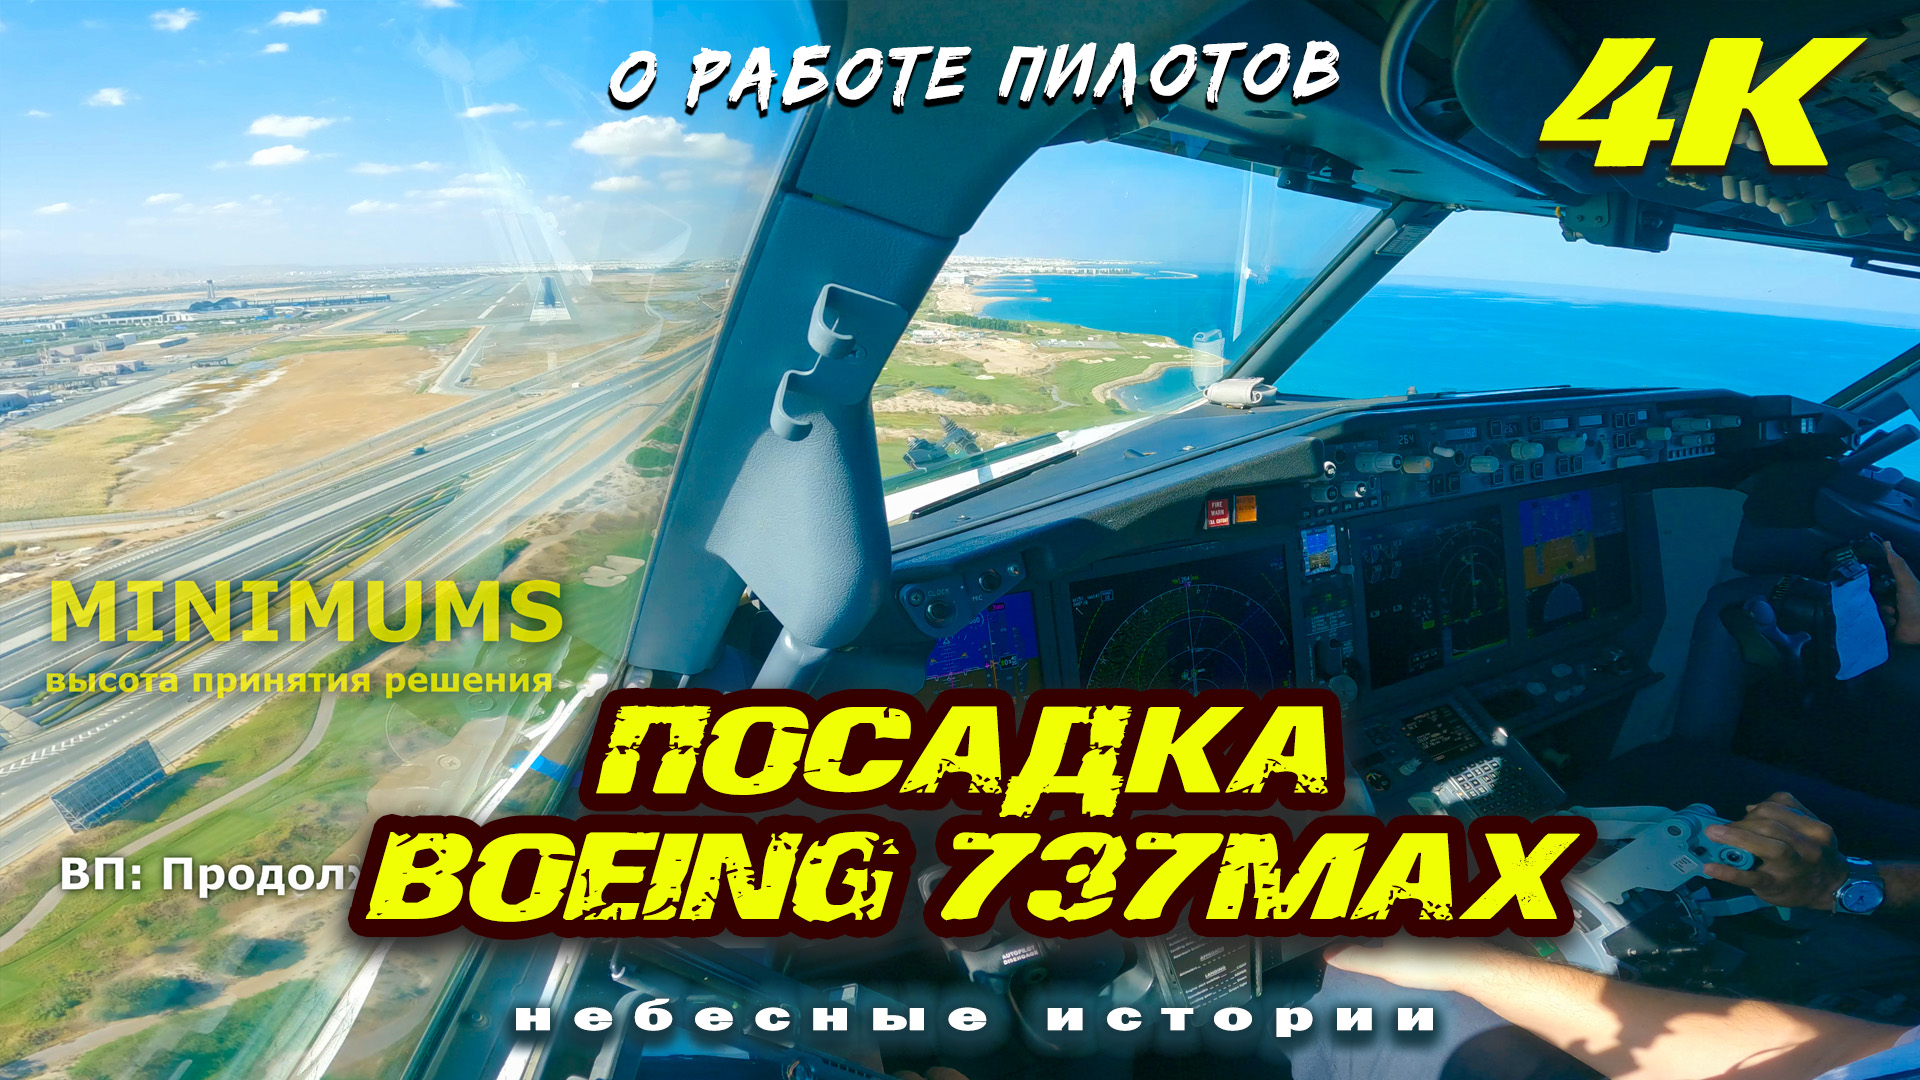 Второй пилот красиво посадил Боинг 737MAX в курортном Маскате | Видео 4К